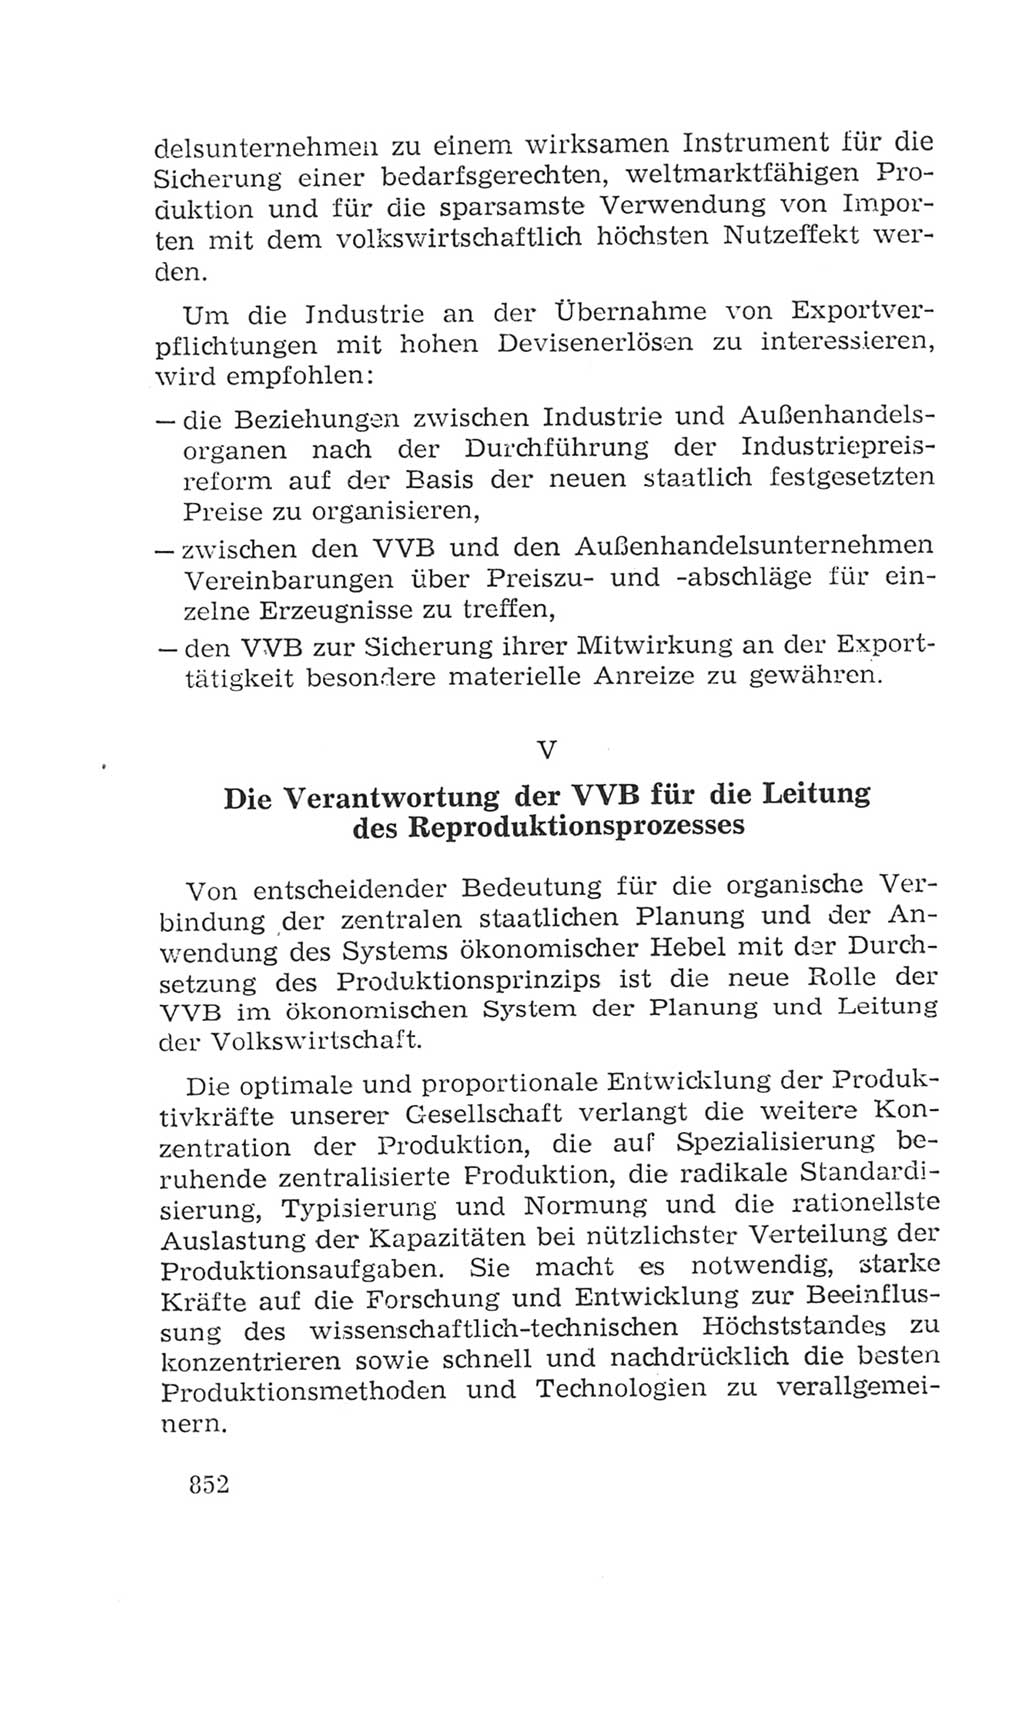 Volkskammer (VK) der Deutschen Demokratischen Republik (DDR), 4. Wahlperiode 1963-1967, Seite 852 (VK. DDR 4. WP. 1963-1967, S. 852)